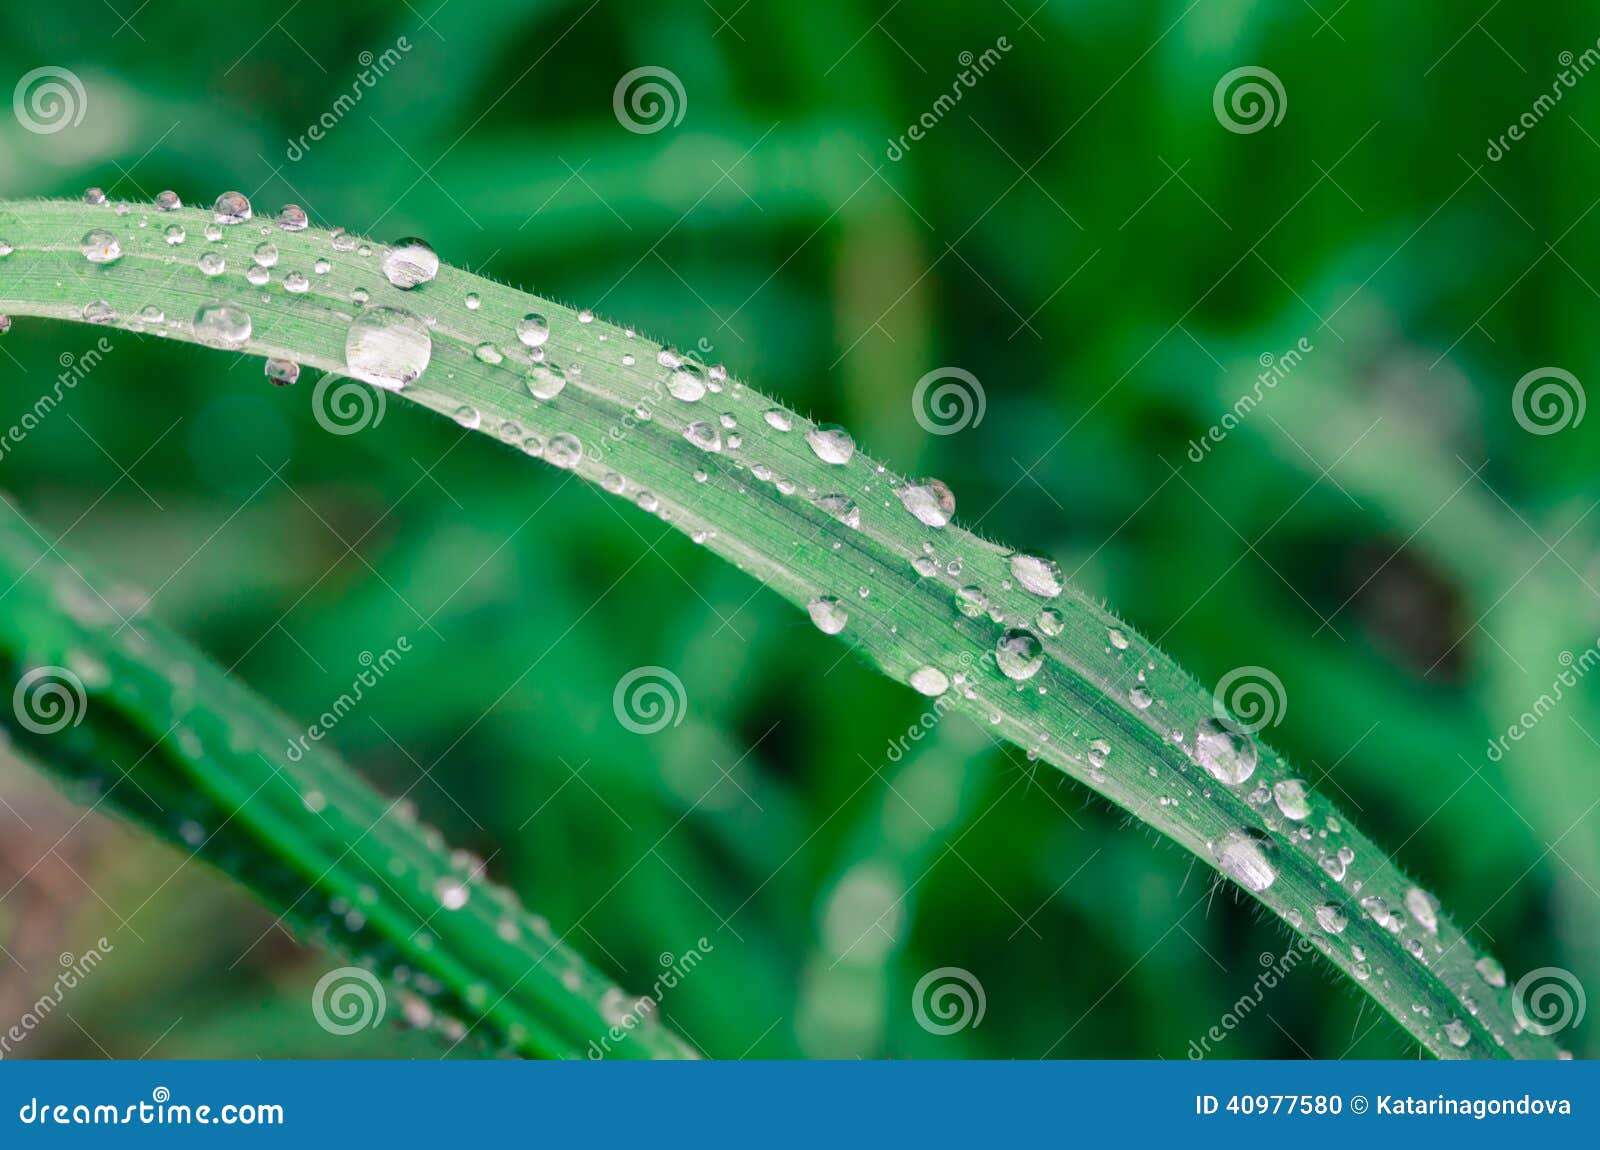 Waterdrop на траве. Падение воды на детали зеленой травы